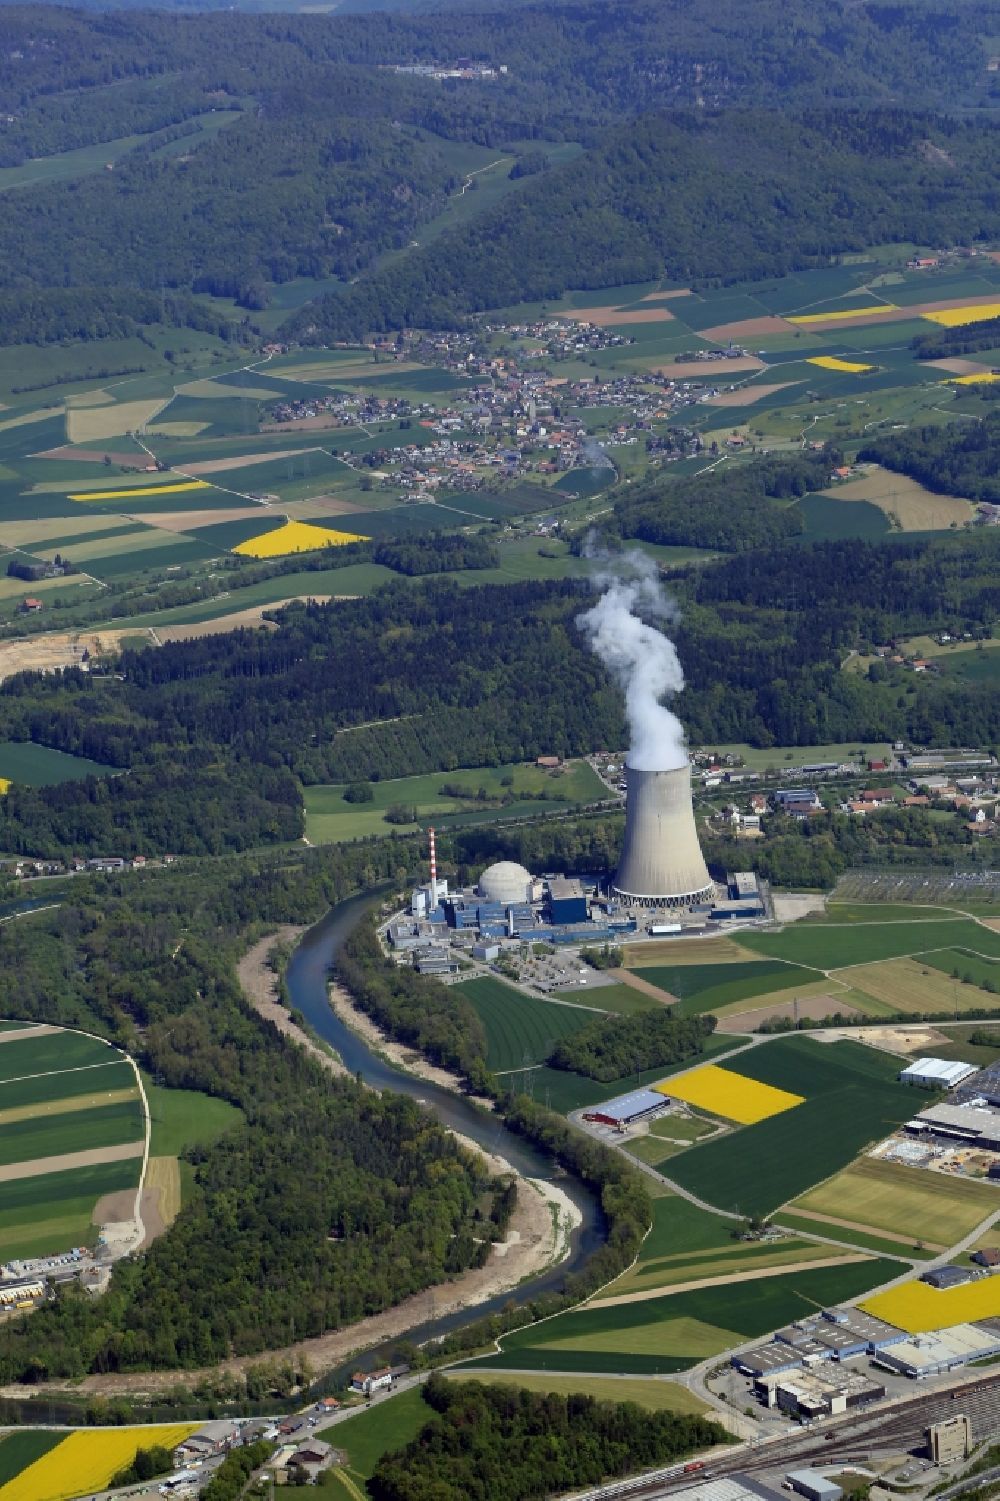 Däniken von oben - Reaktorblöcke und Anlagen des AKW - KKW Kernkraftwerk Gösgen in Däniken in Solothurn, Schweiz